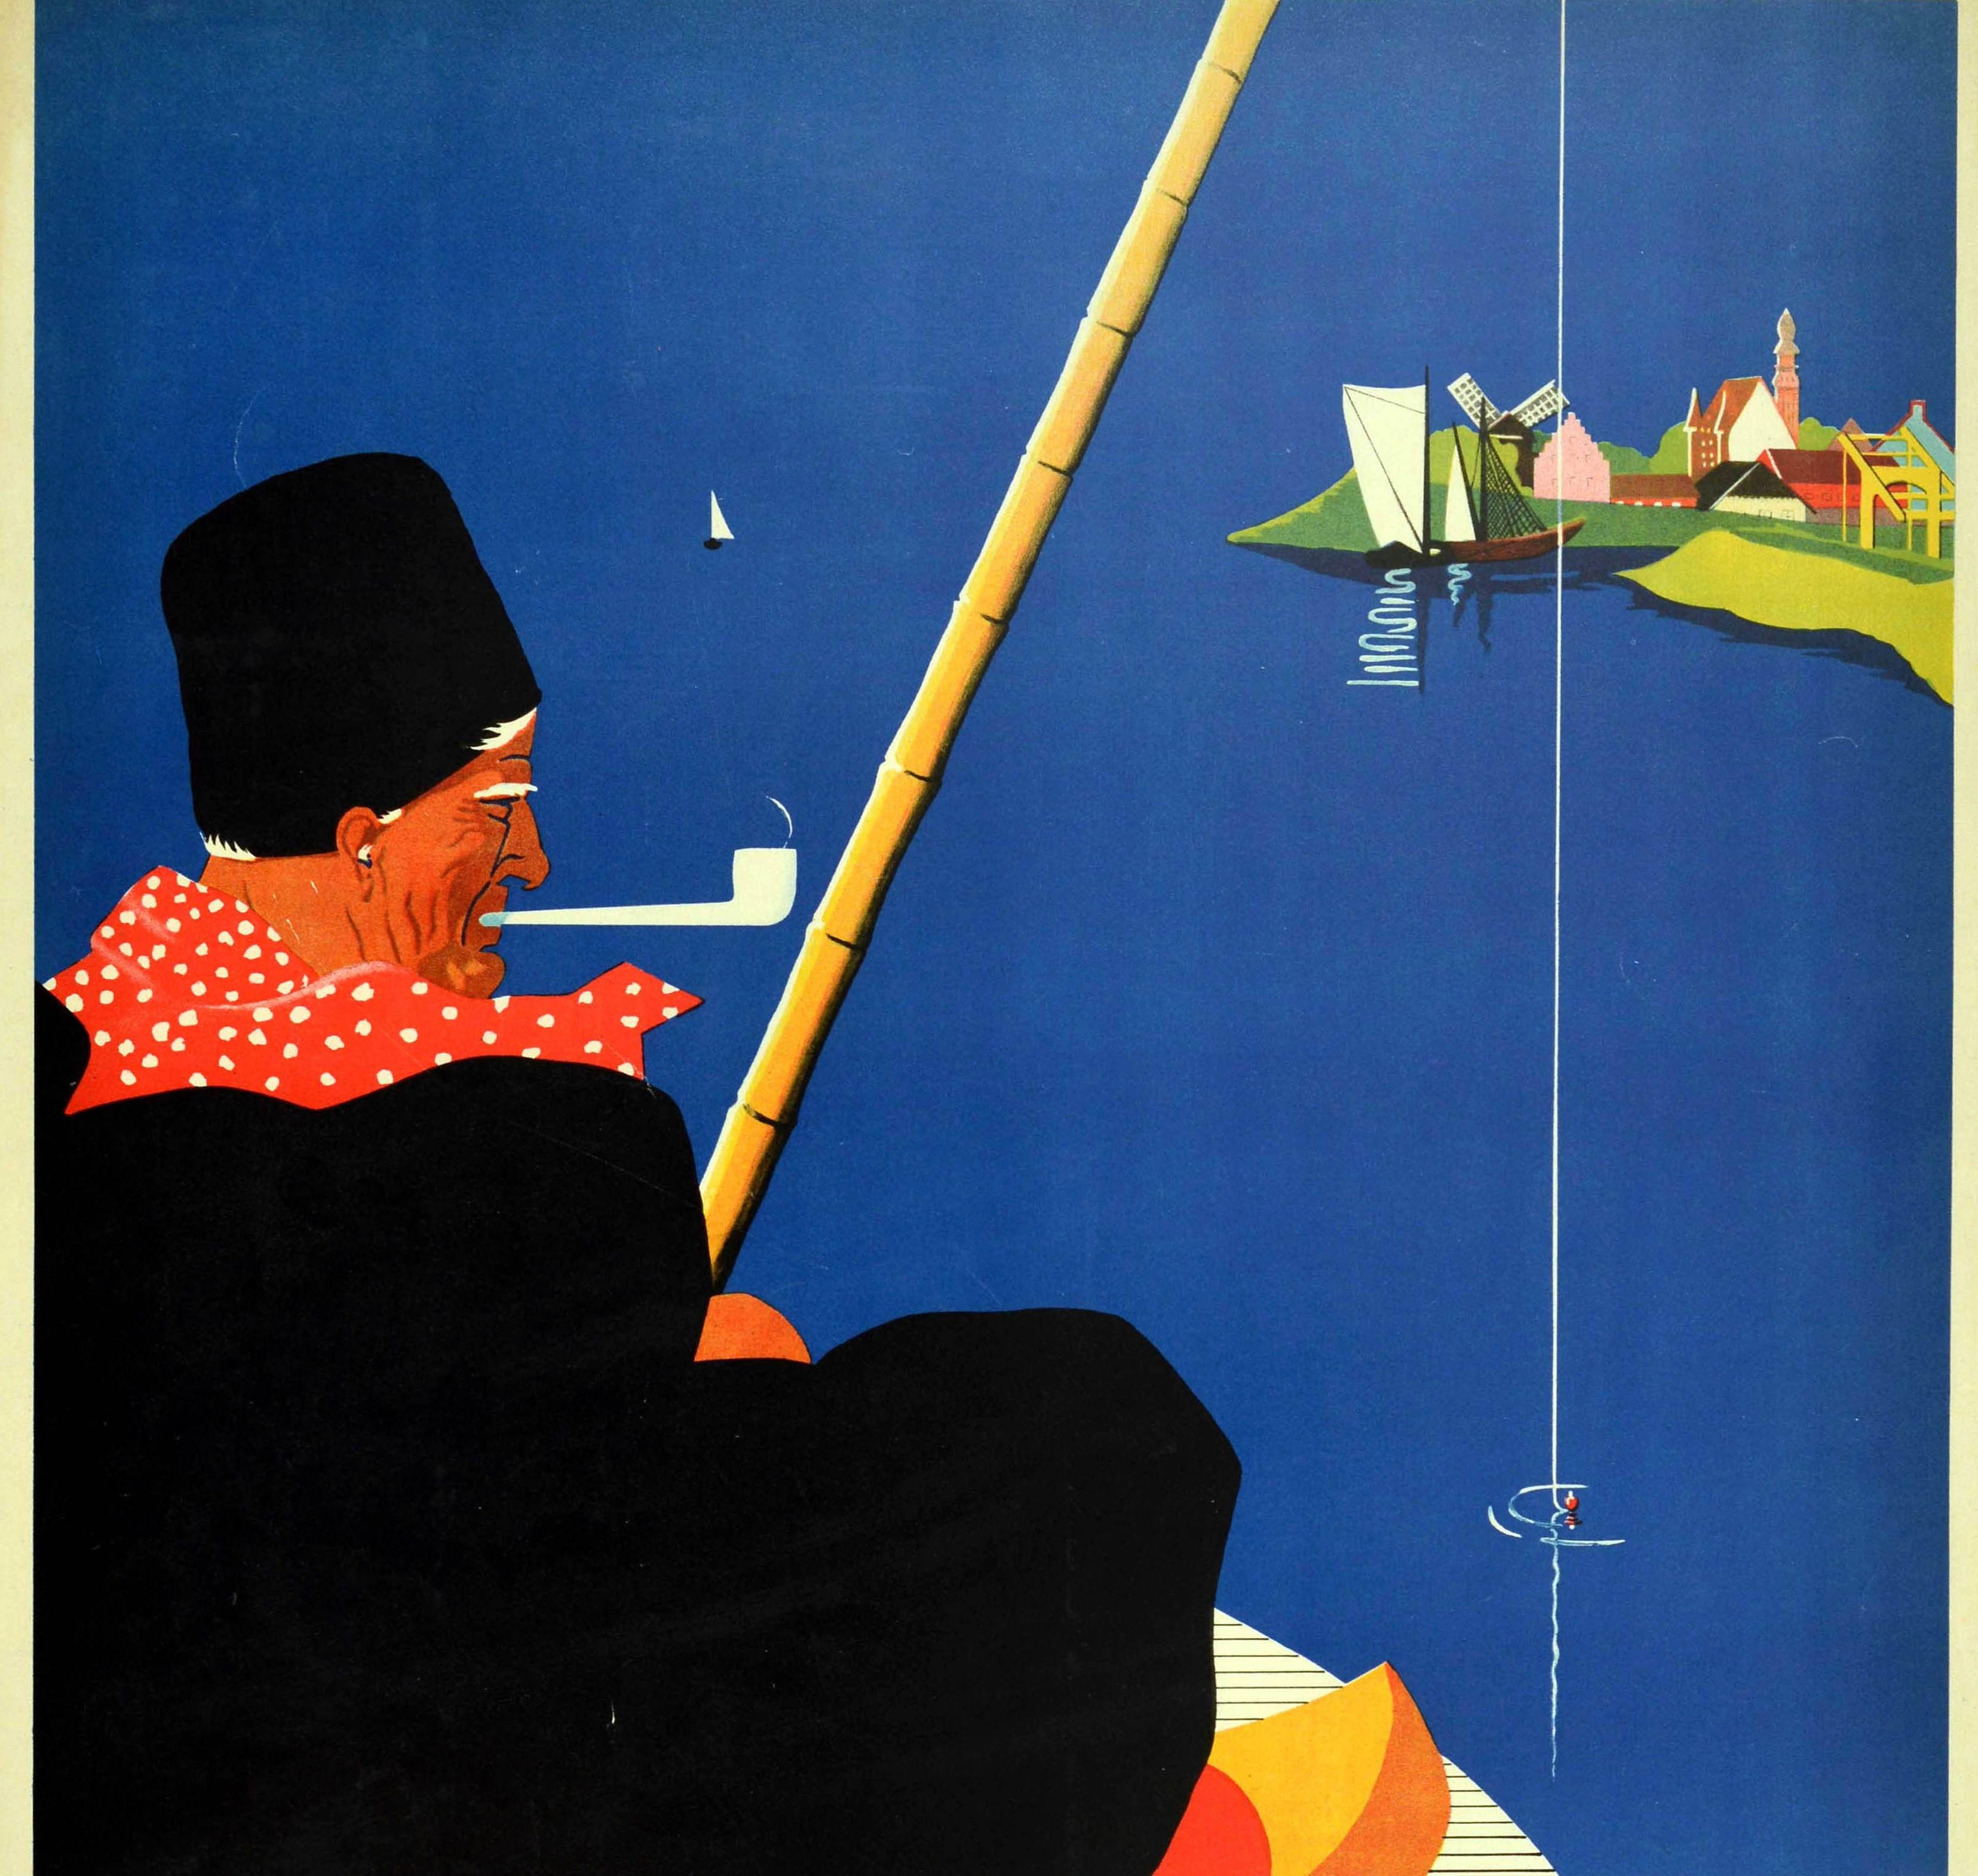 Affiche de voyage vintage originale pour la Hollande comportant une superbe illustration d'un homme âgé portant un chapeau noir et une écharpe à pois rouges et blancs, fumant la pipe et pêchant sur des eaux bleues calmes avec des voiliers et un